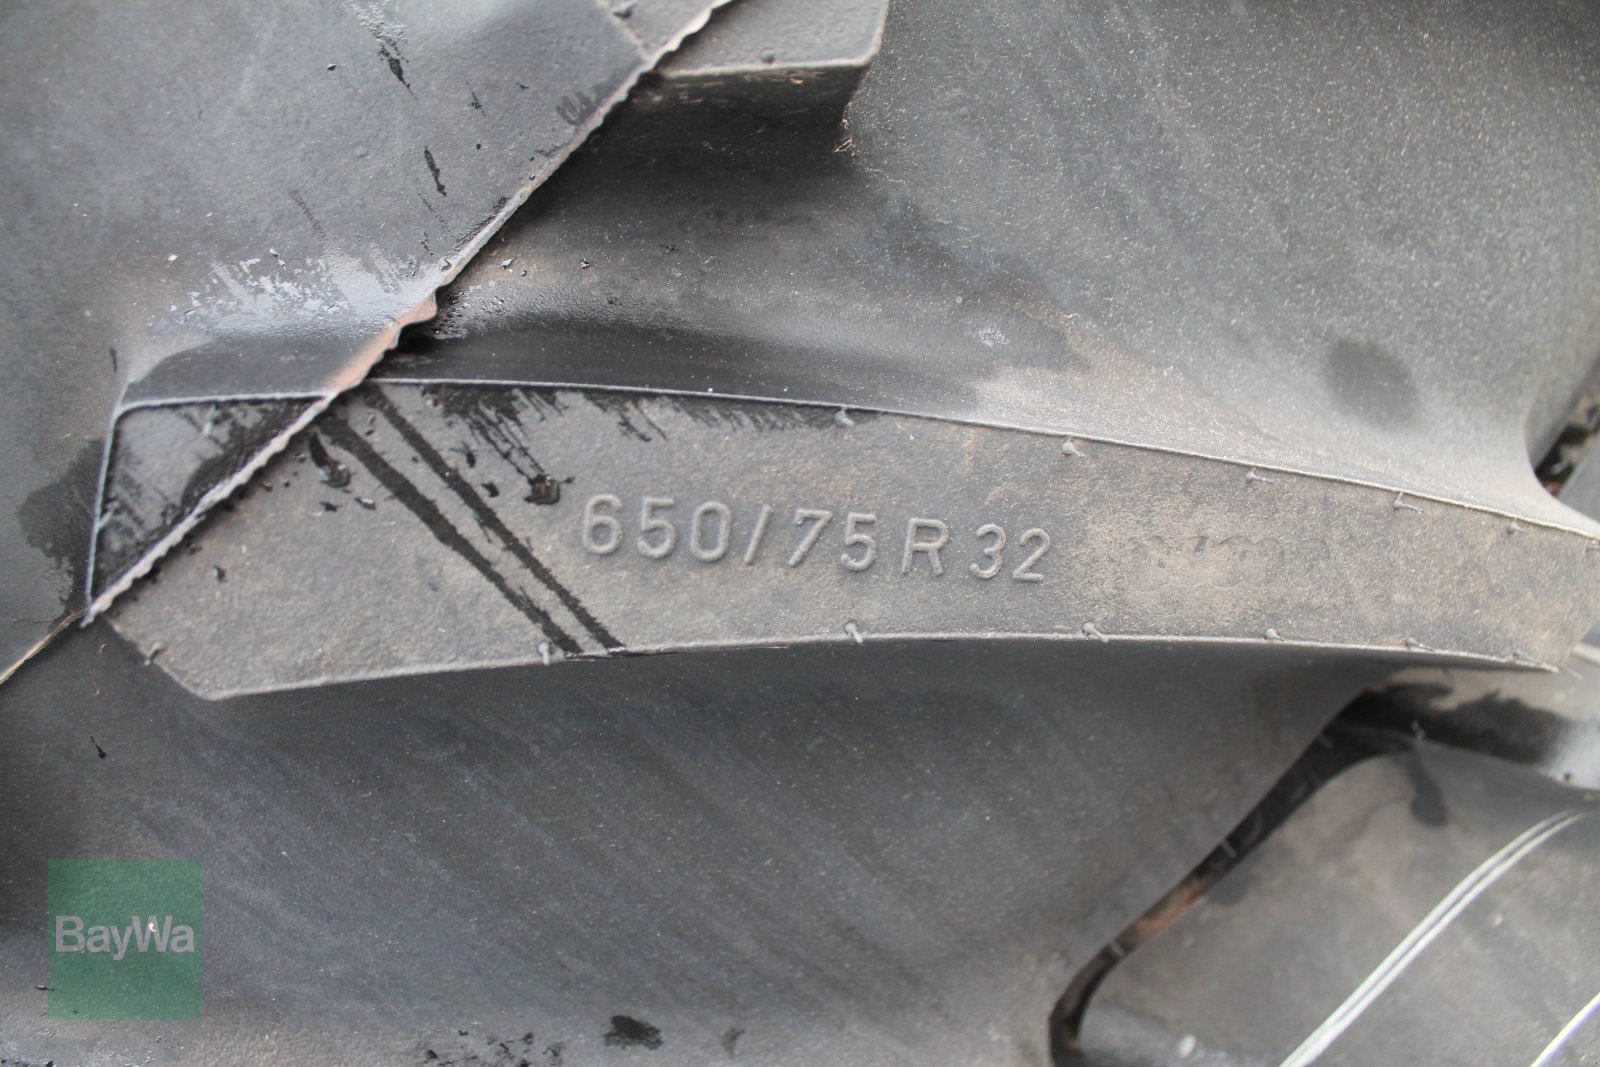 Reifen des Typs Mitas 650/75 R32, Neumaschine in Straubing (Bild 2)